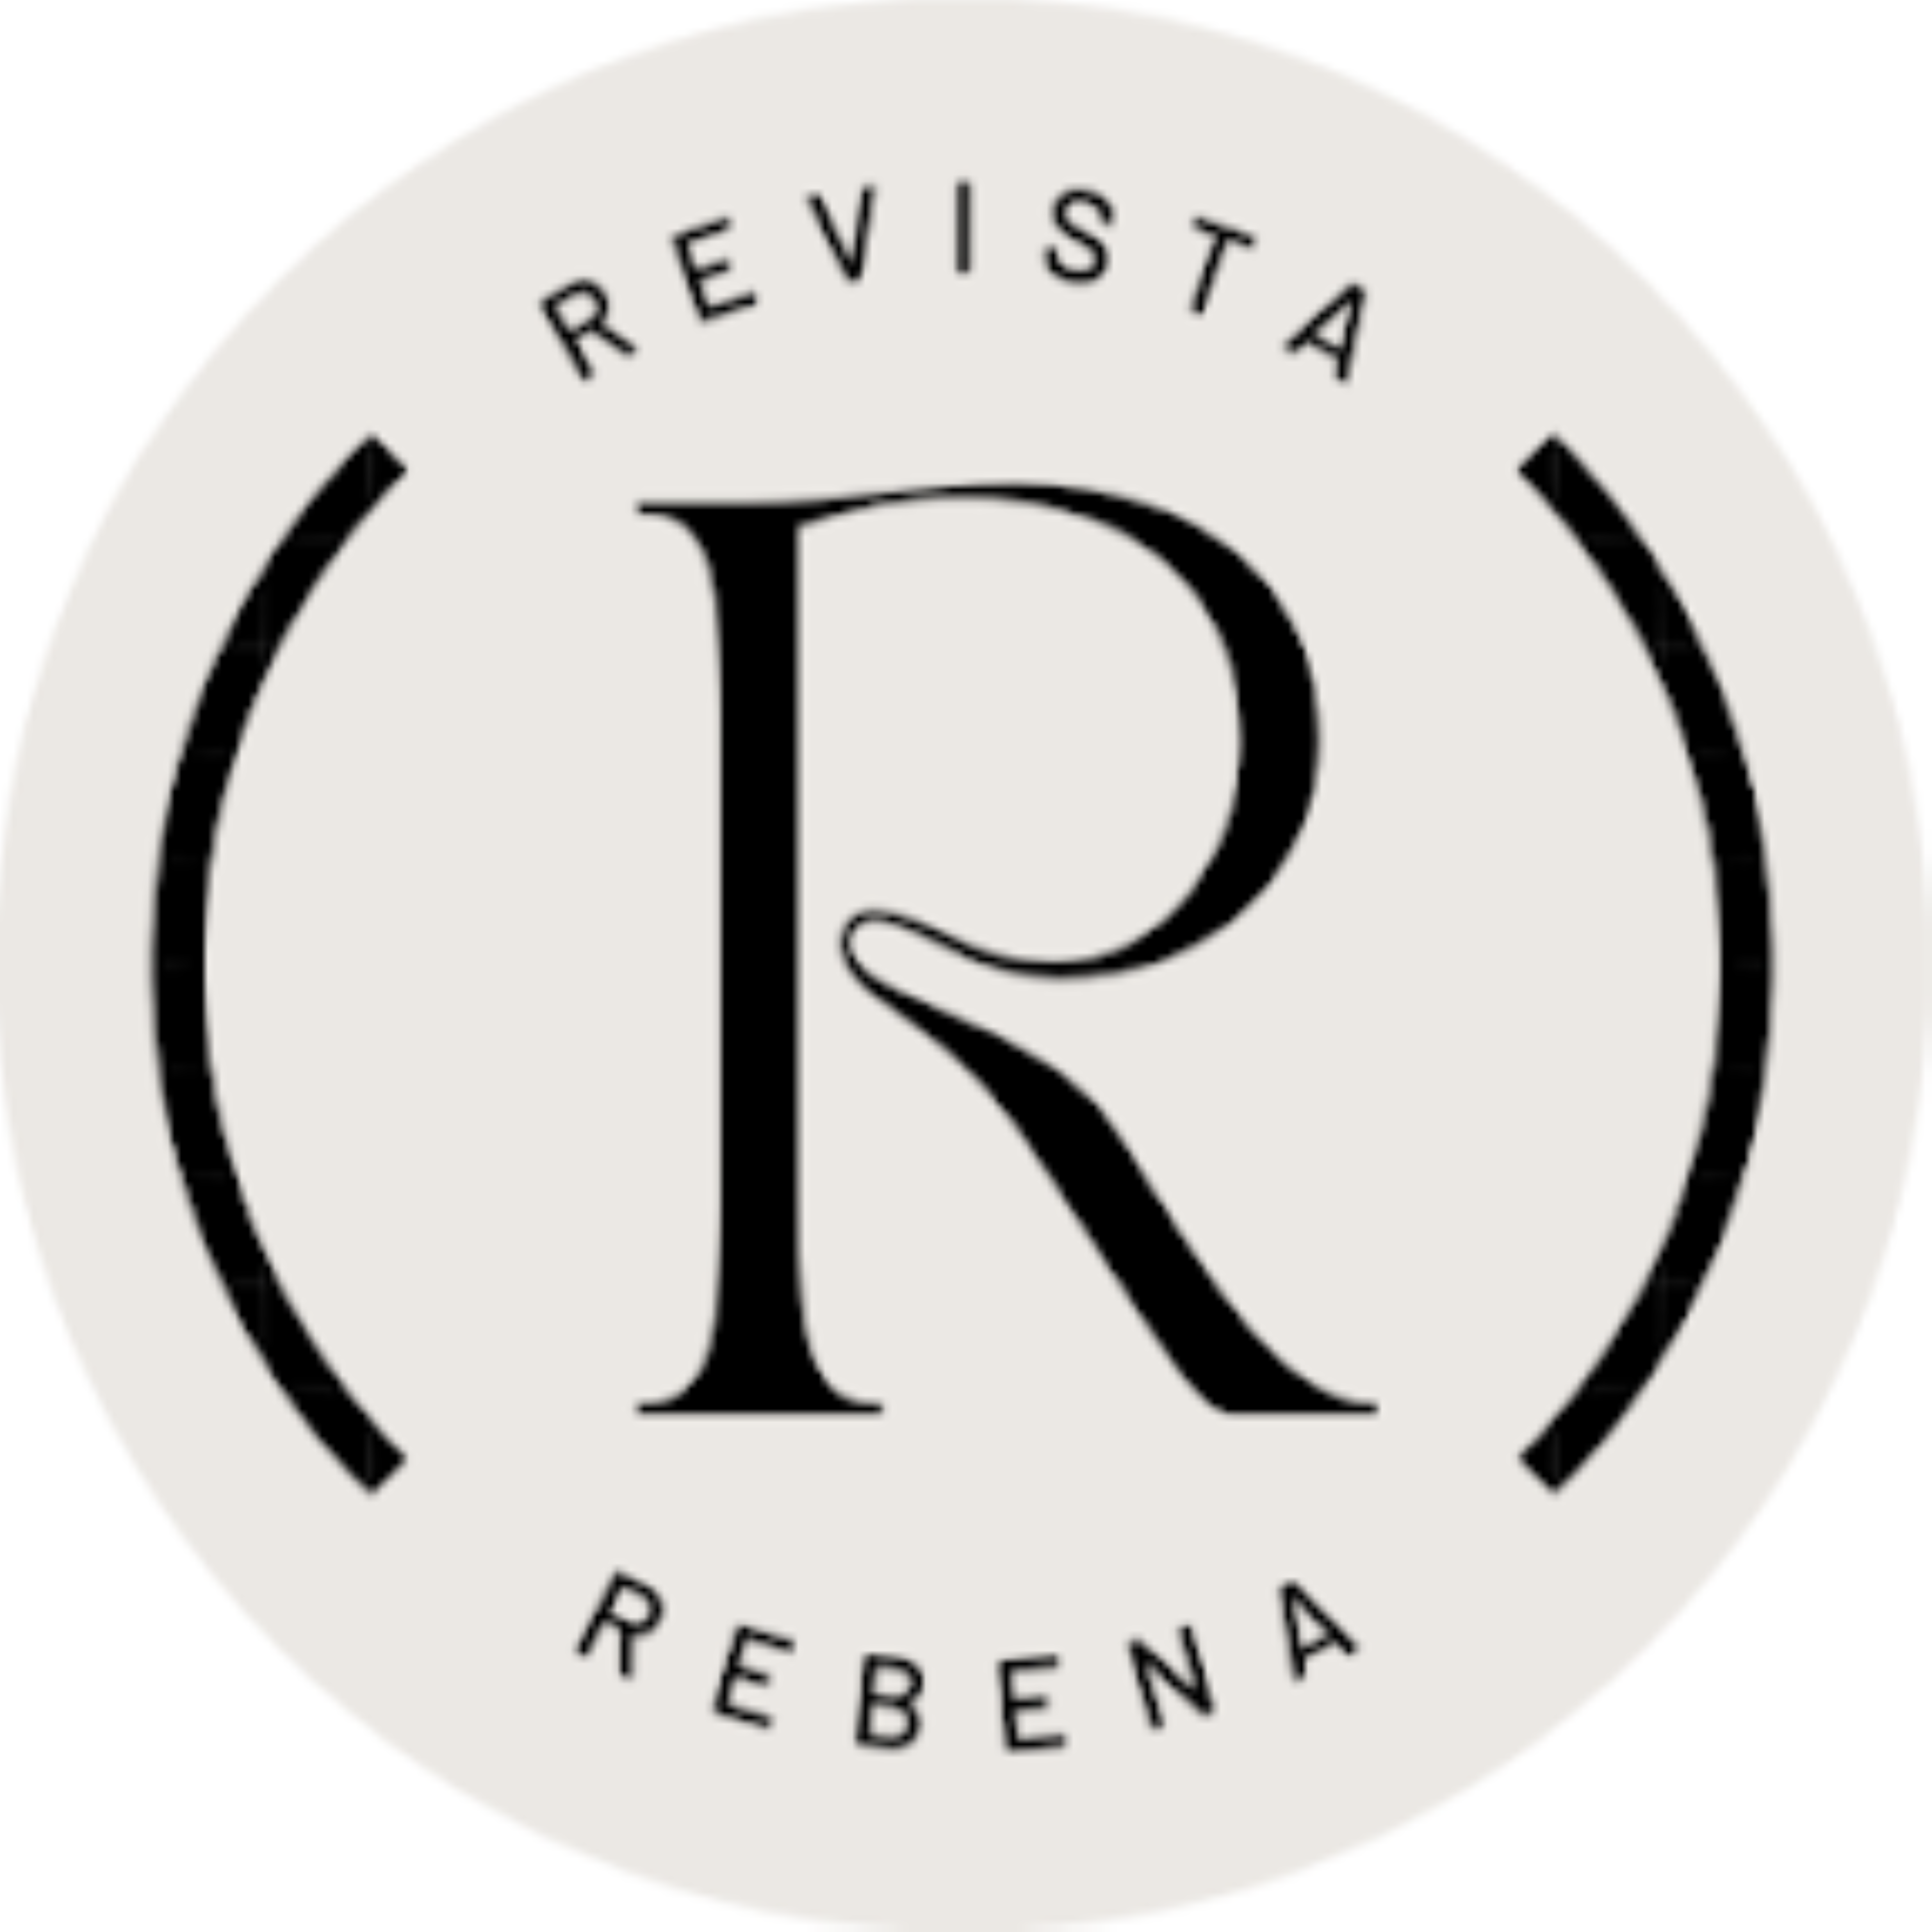 Rebena - Revista Brasileira de Ensino e Aprendizagem